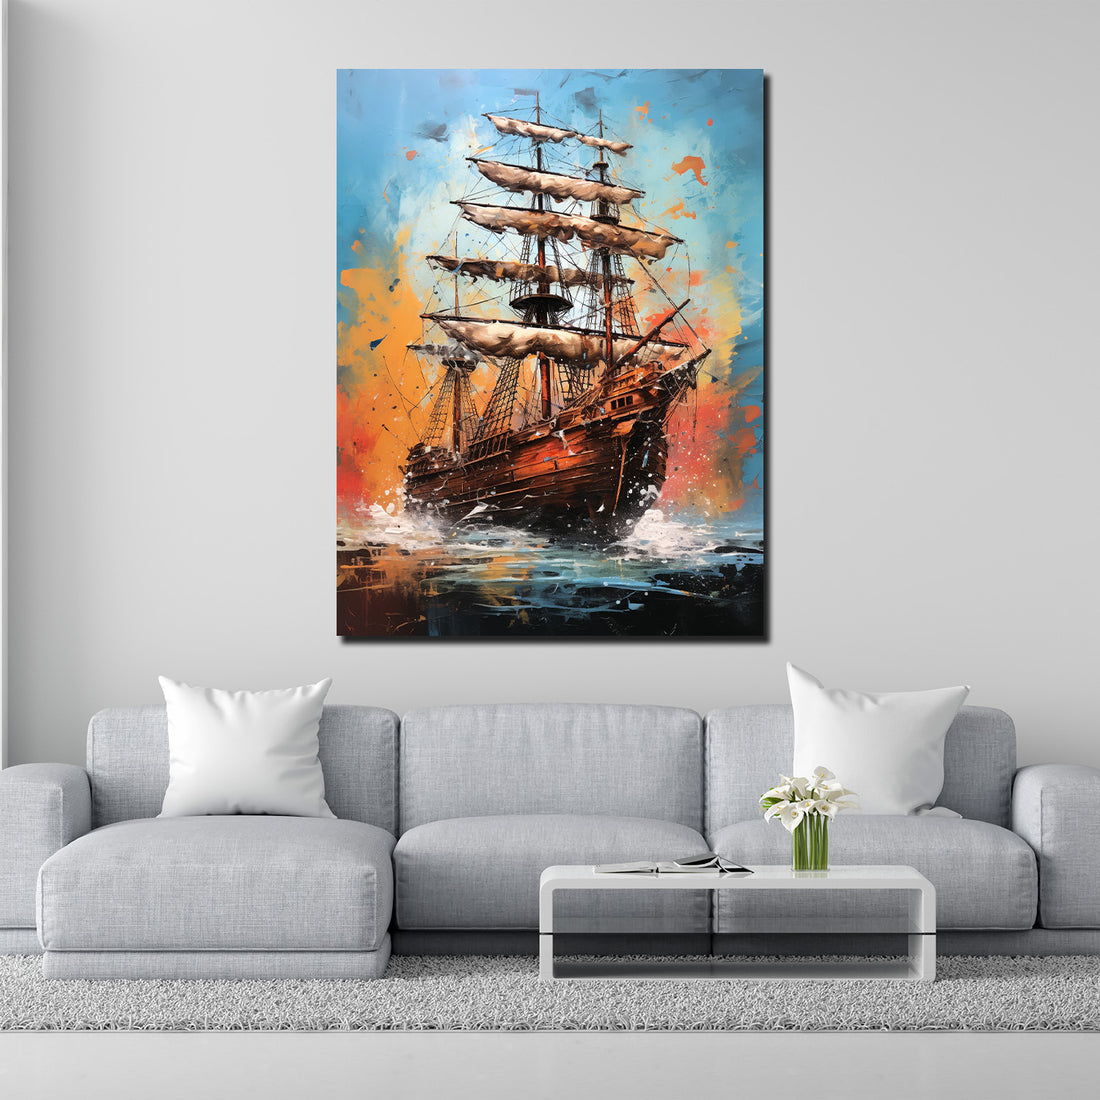 Wandbild abstrakt Segelschiff auf hoher See